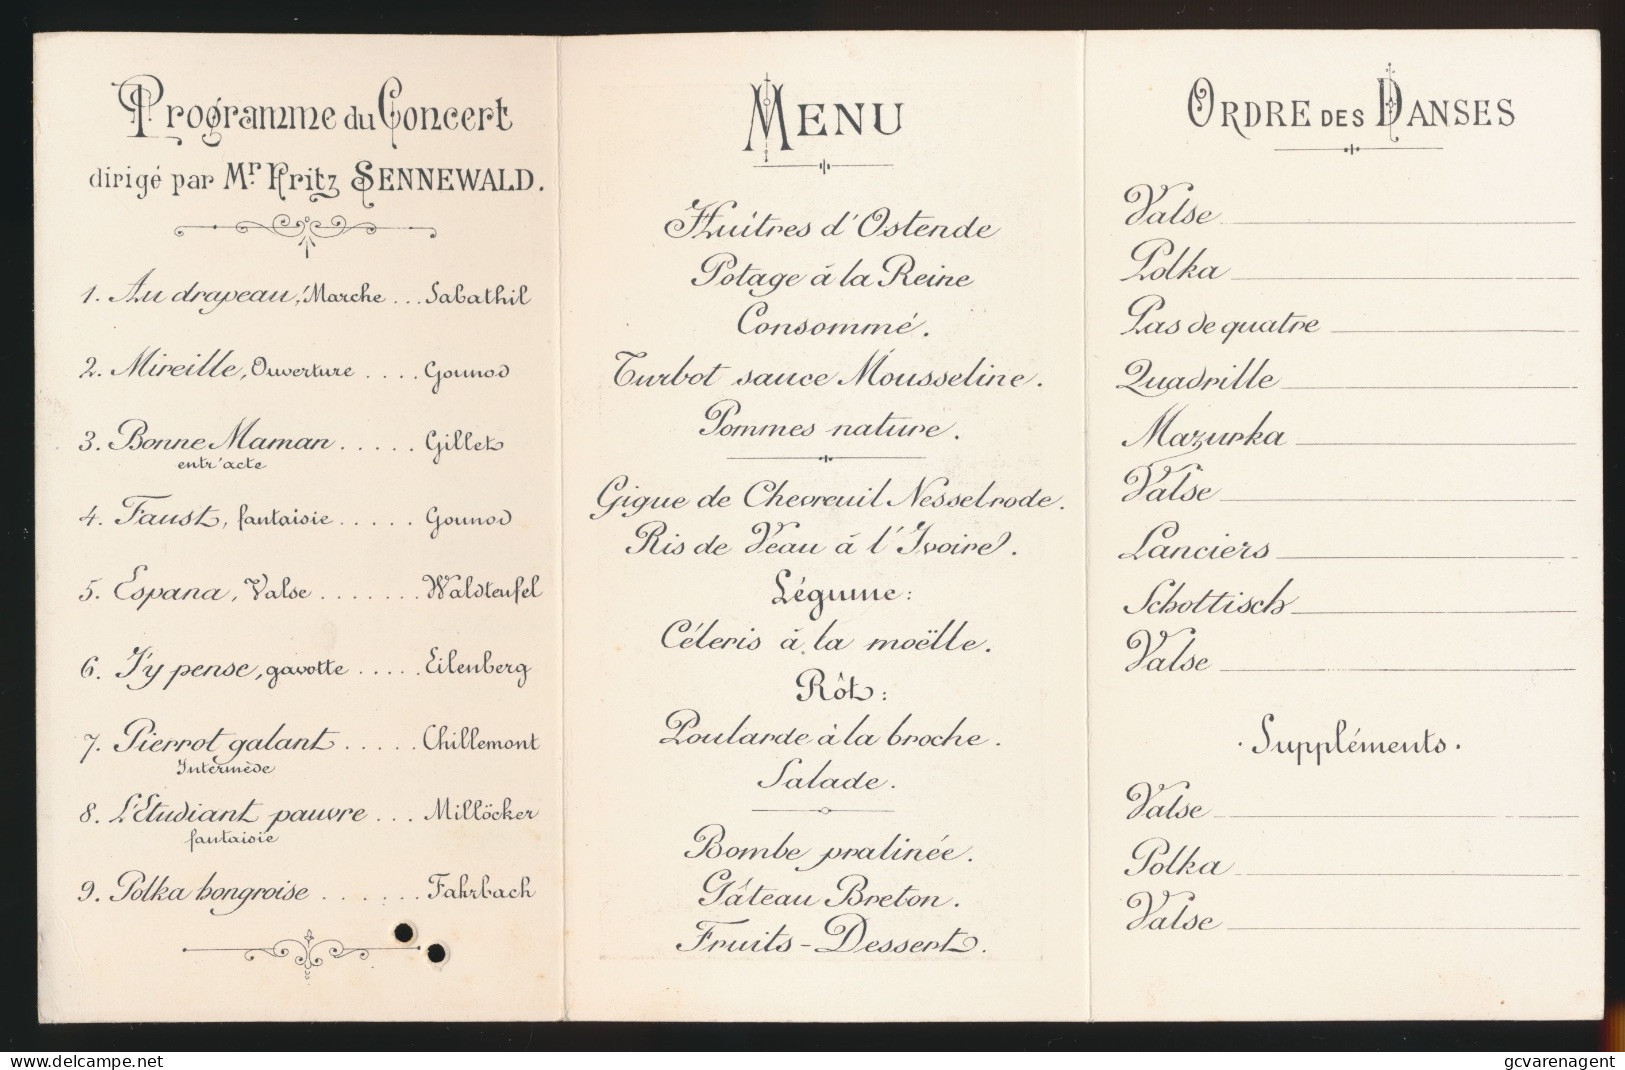 MENU = CERCLE HEBE BRUXELLES = GRAND BANQUET DE 15e ANNIVERSAIRE 1885-1900 = A TOUS UNION ET PLAISIR - HOTEL METROPOLE - Menus